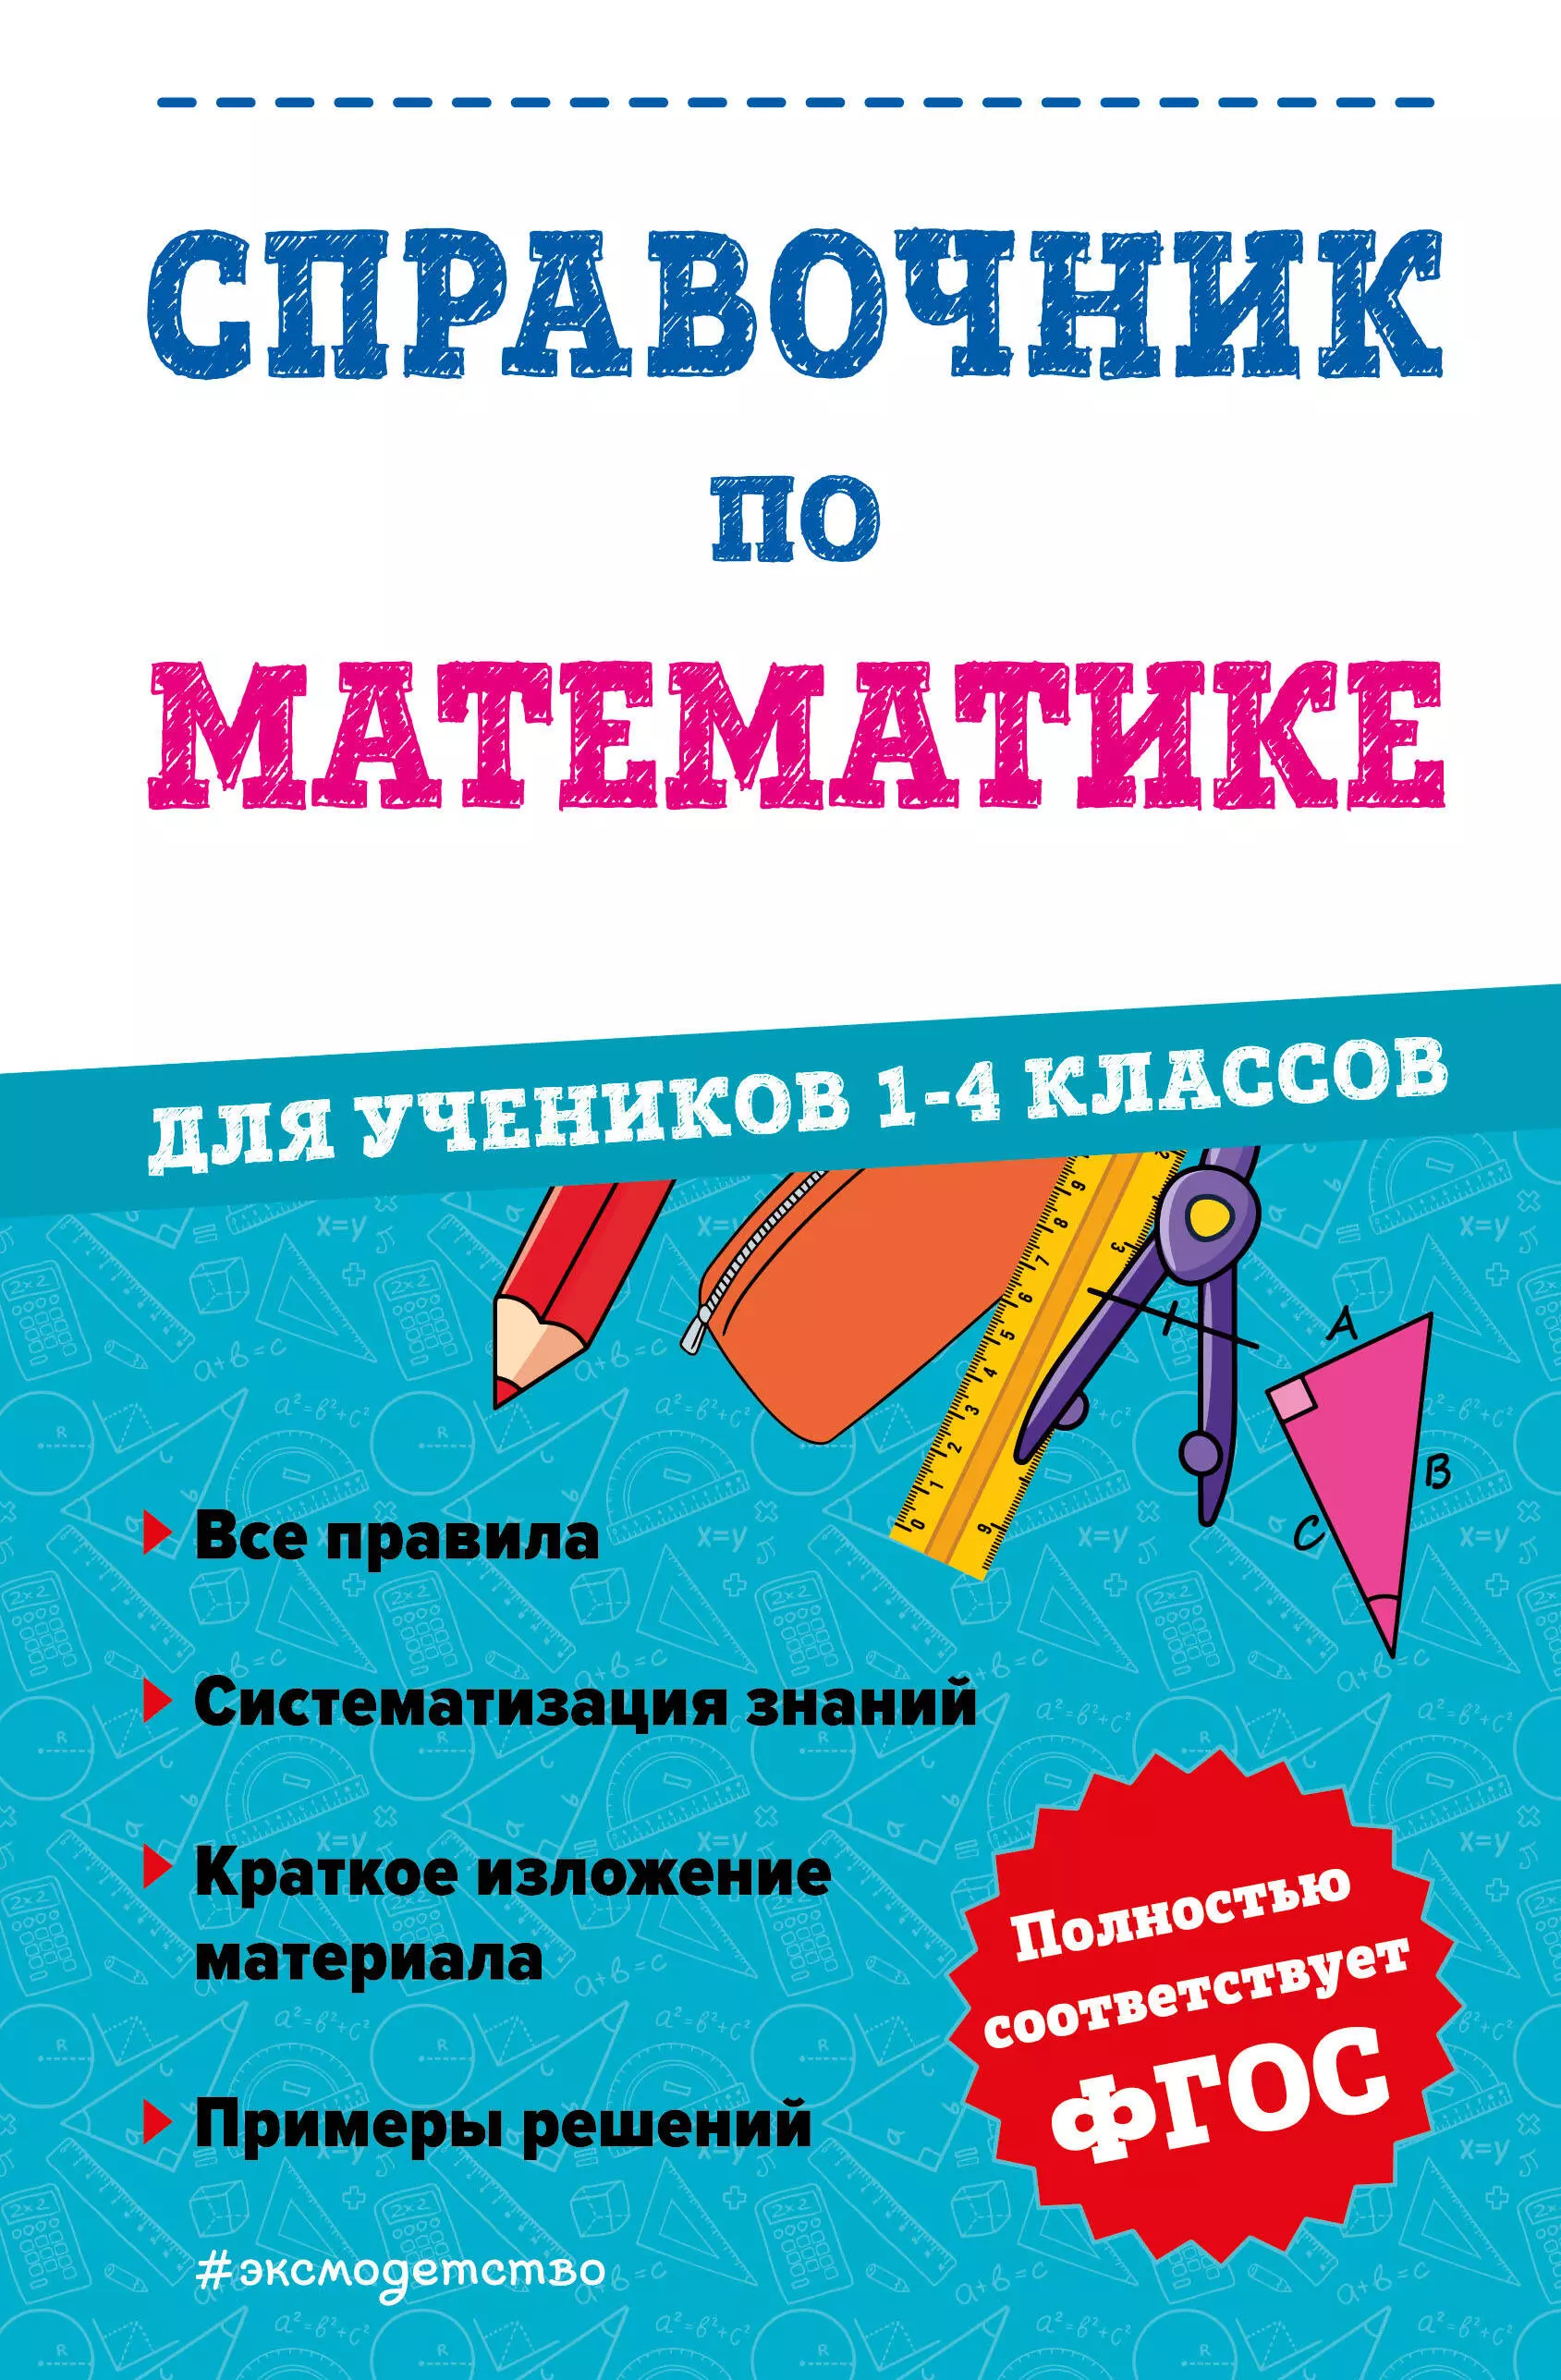 Справочник по математике для учеников 1-4 классов справочник по математике для учеников 1 4 классов иванова м а